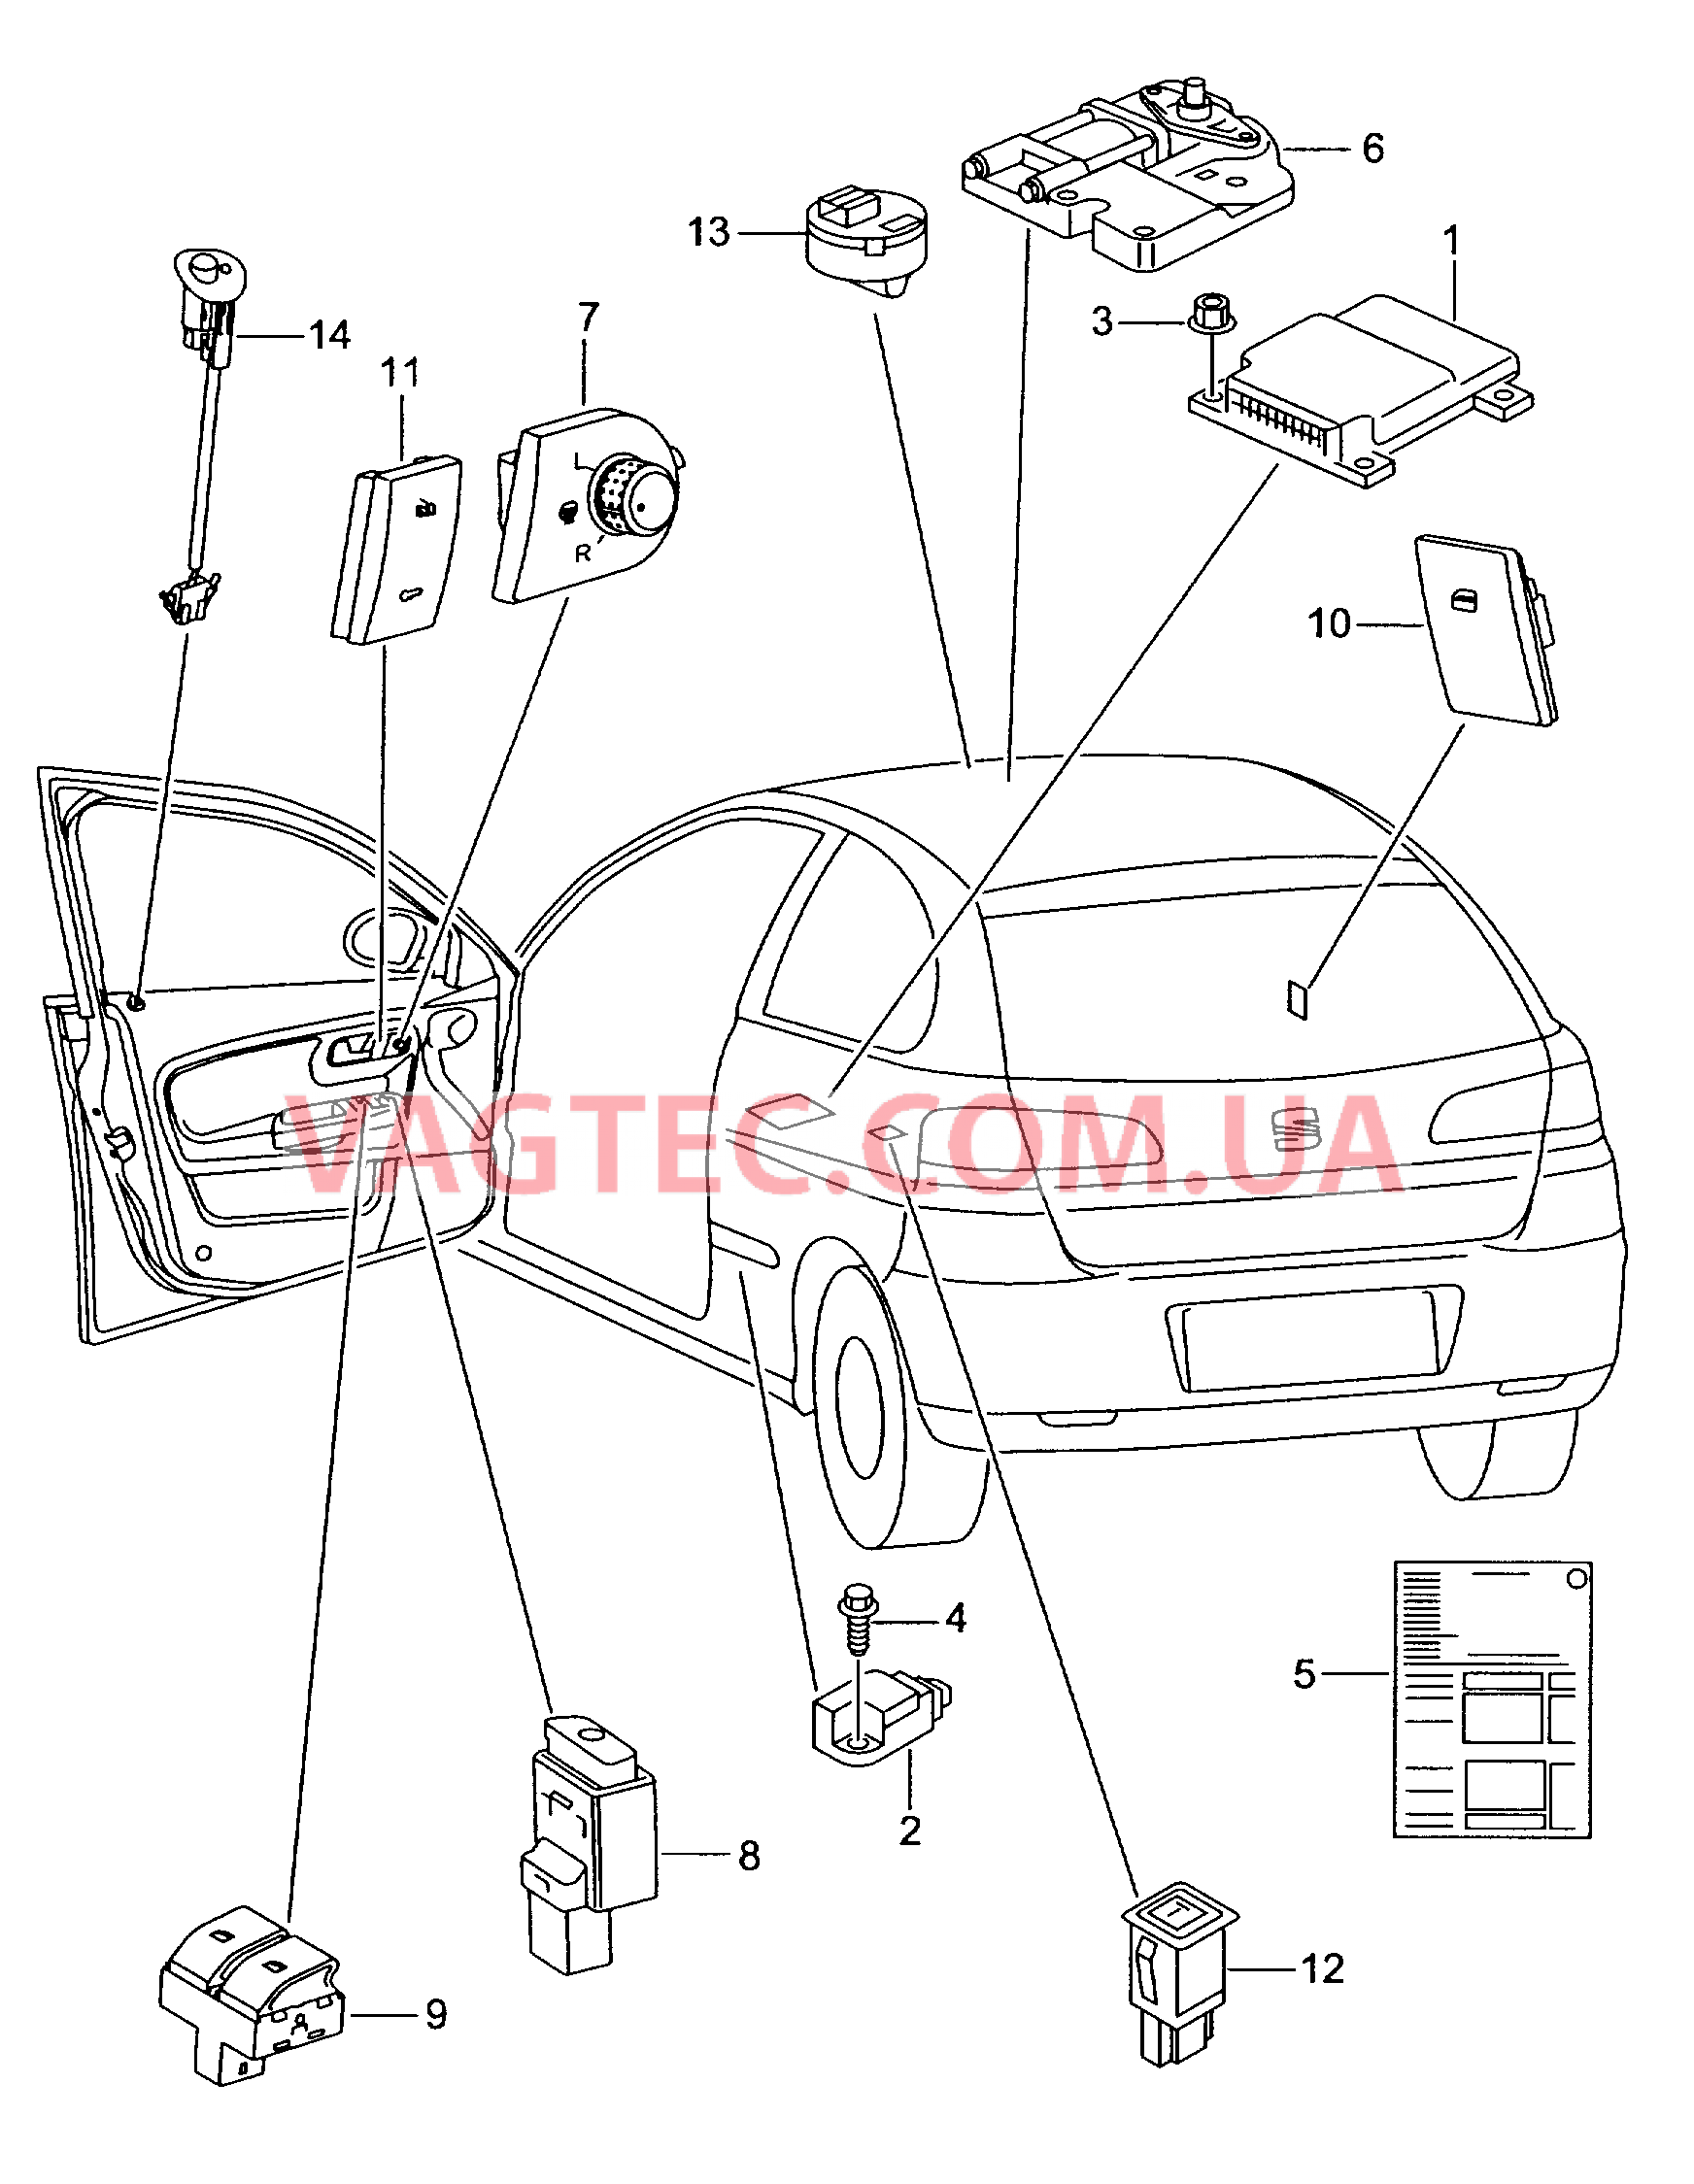 Электродетали для подуш.безоп. Мотор привода люка Выключатель в обивке двери Лампа, контрольная для противоугонной системы  для SEAT CO 2007